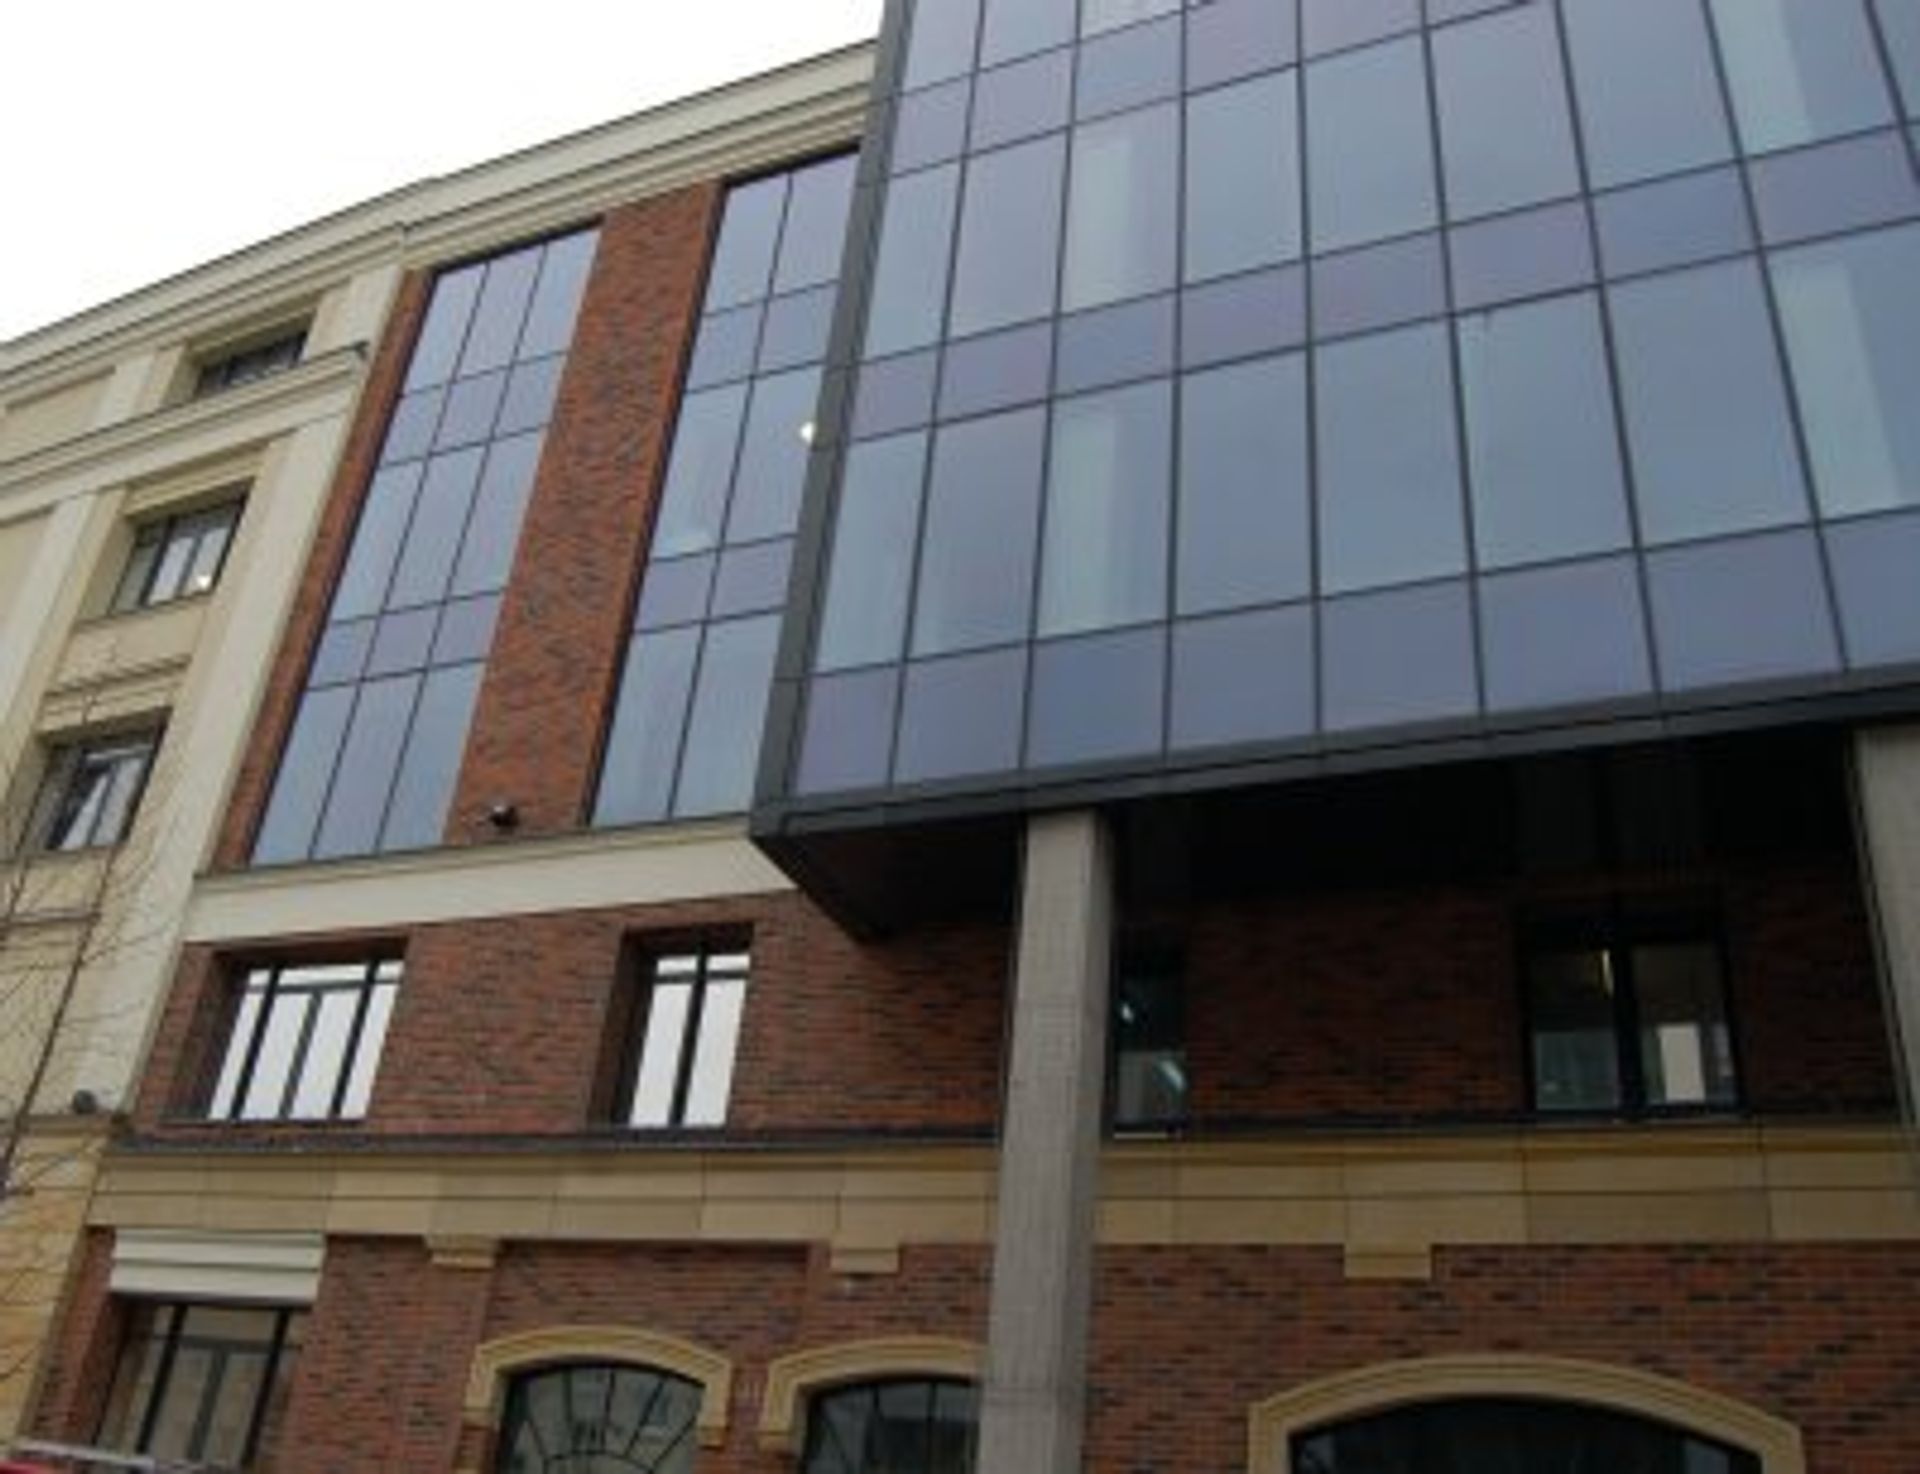  Ochnik Development zakończył modernizację kompleksu biurowego Dzielna 60